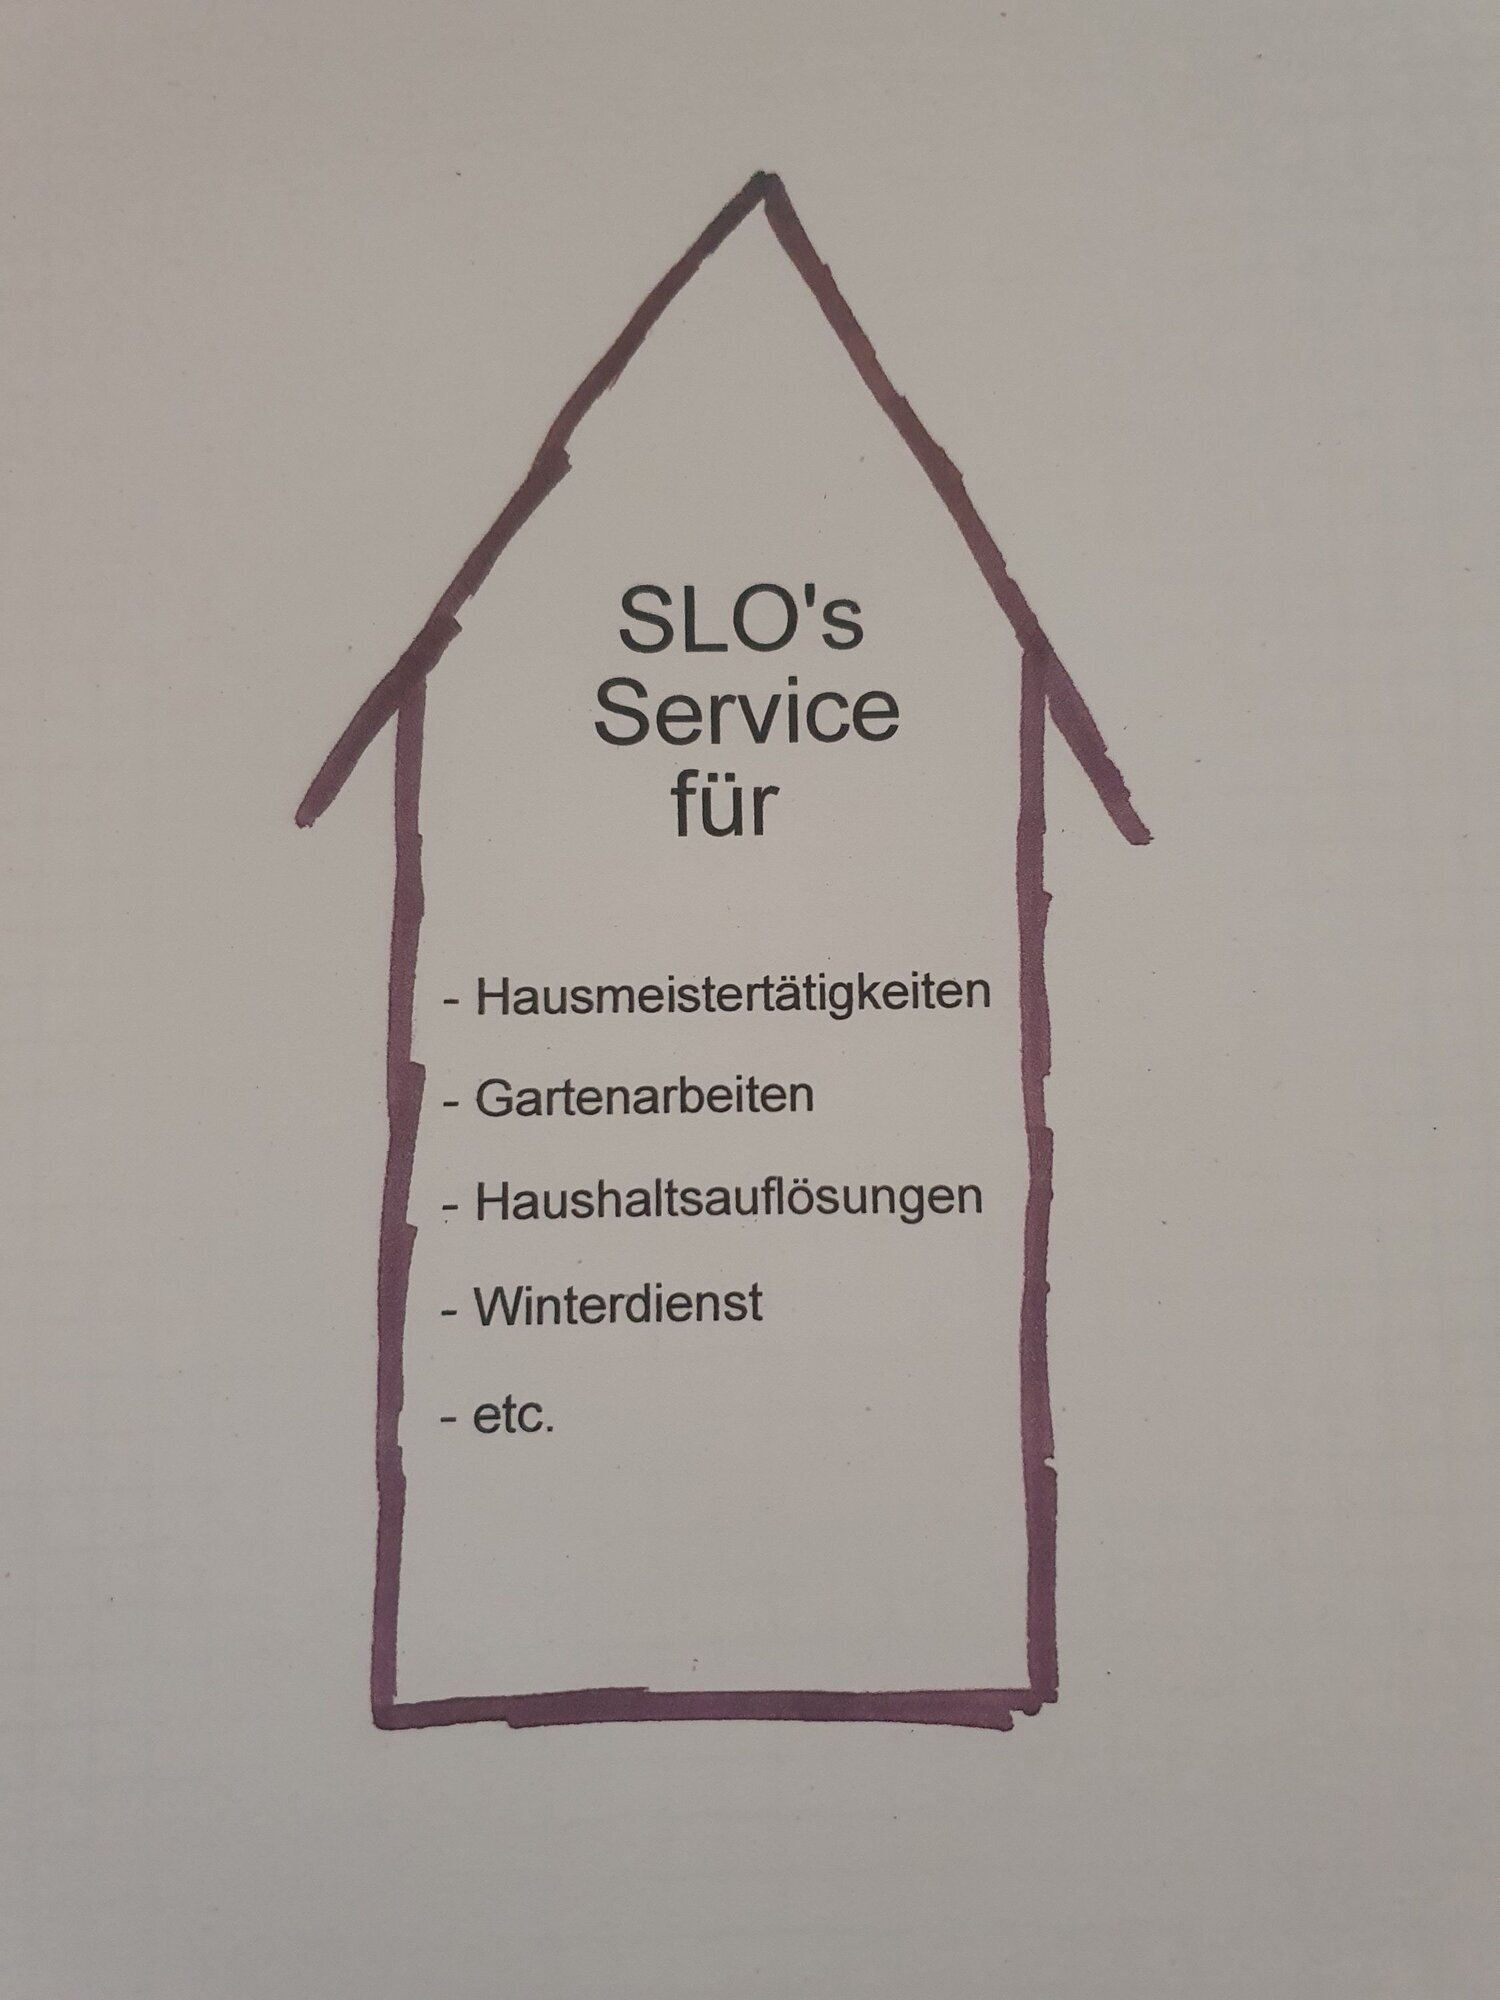 Bild der Slo´s - Service rund um Ihr Haus